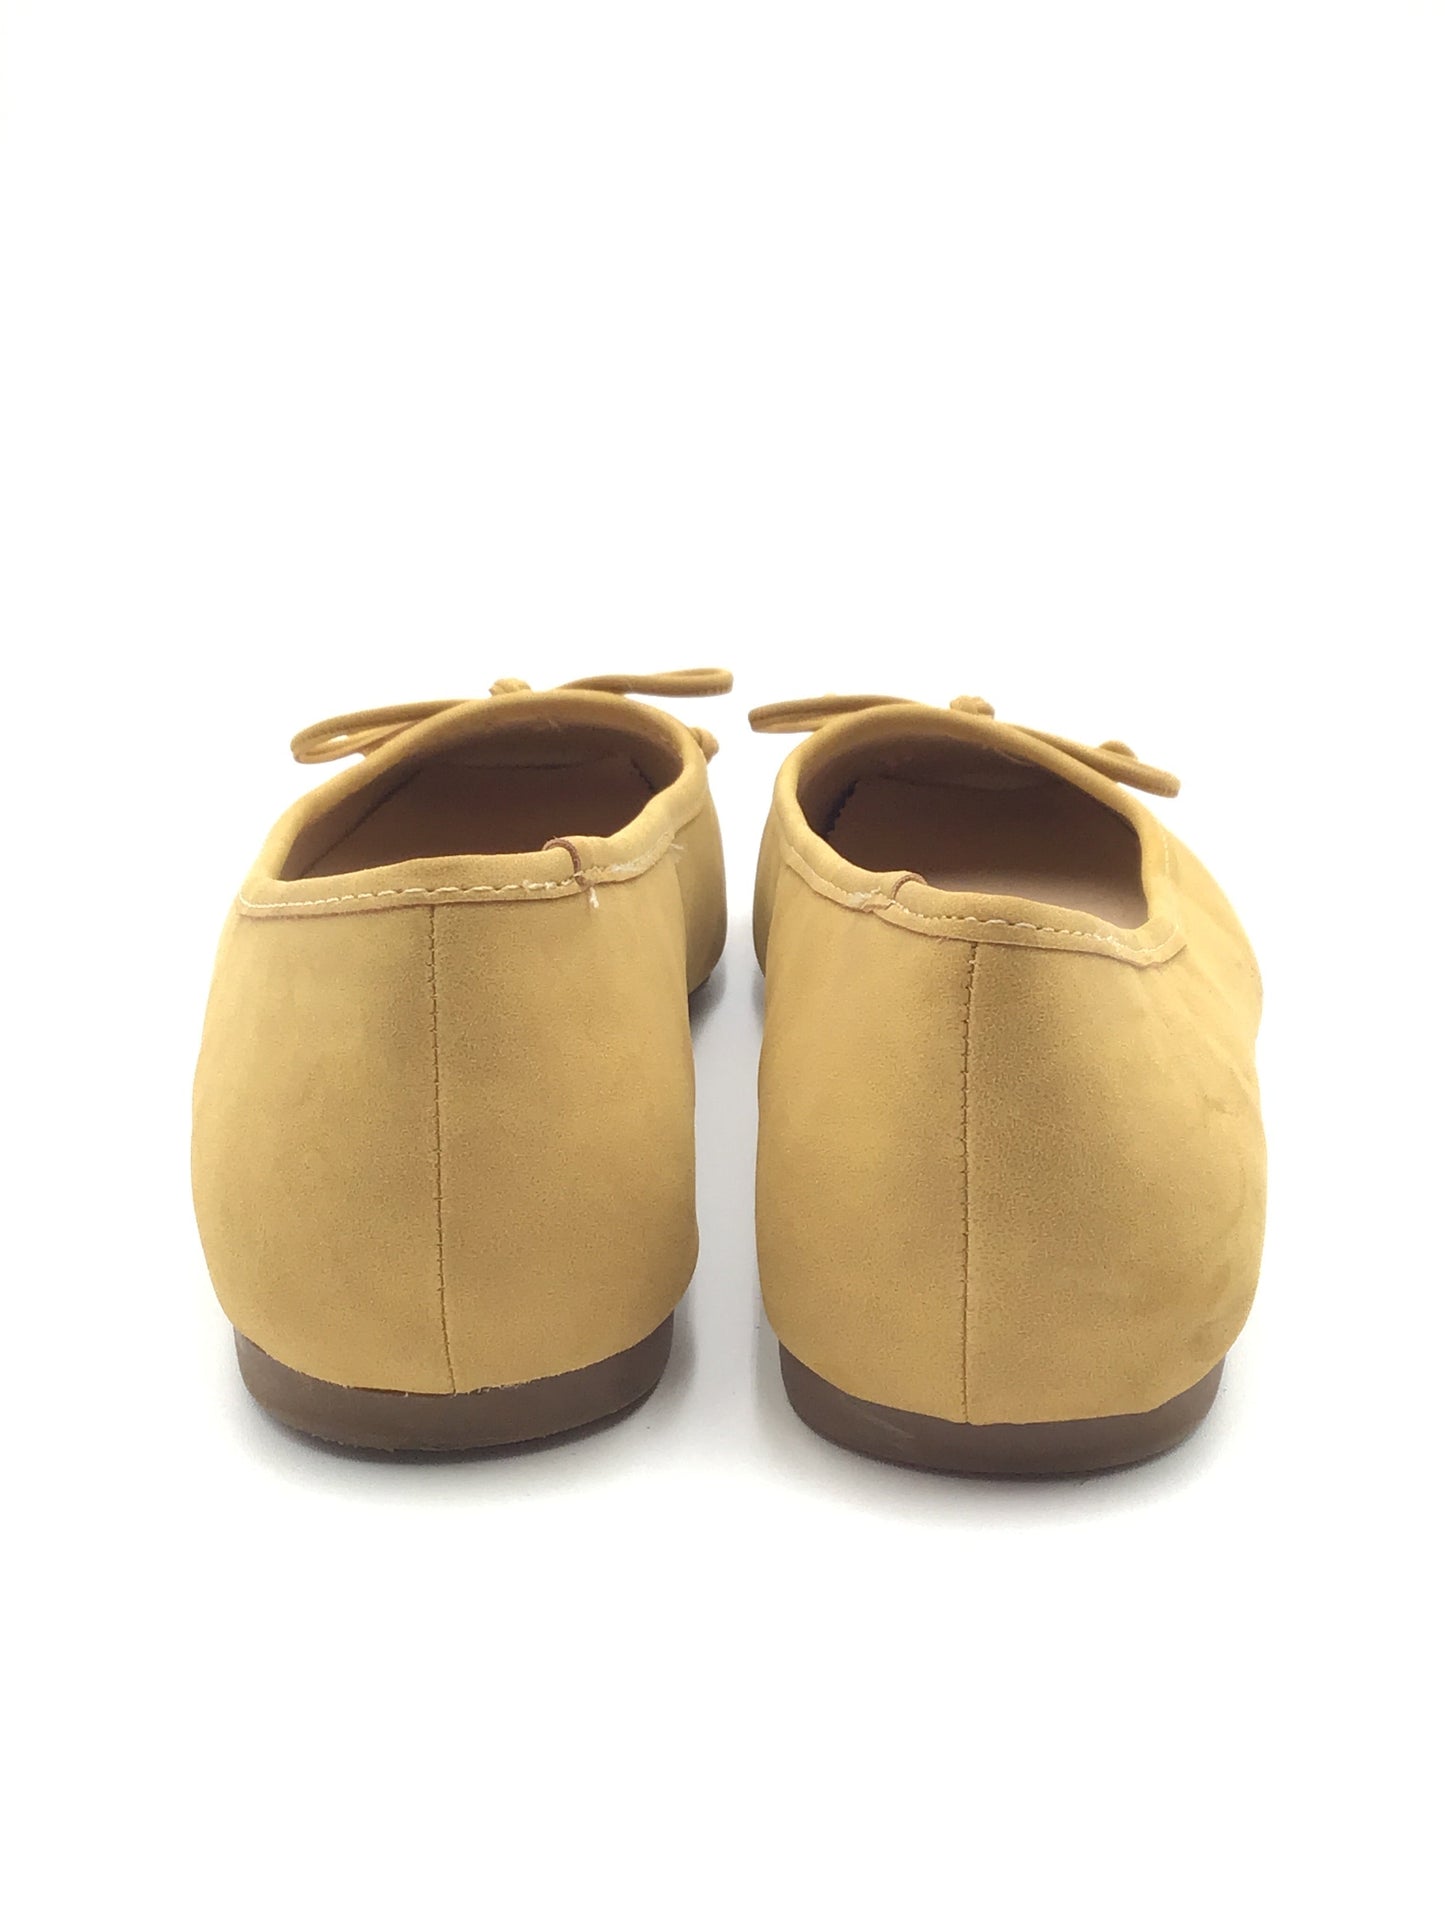 Shoes Flats By Liz Claiborne  Size: 9